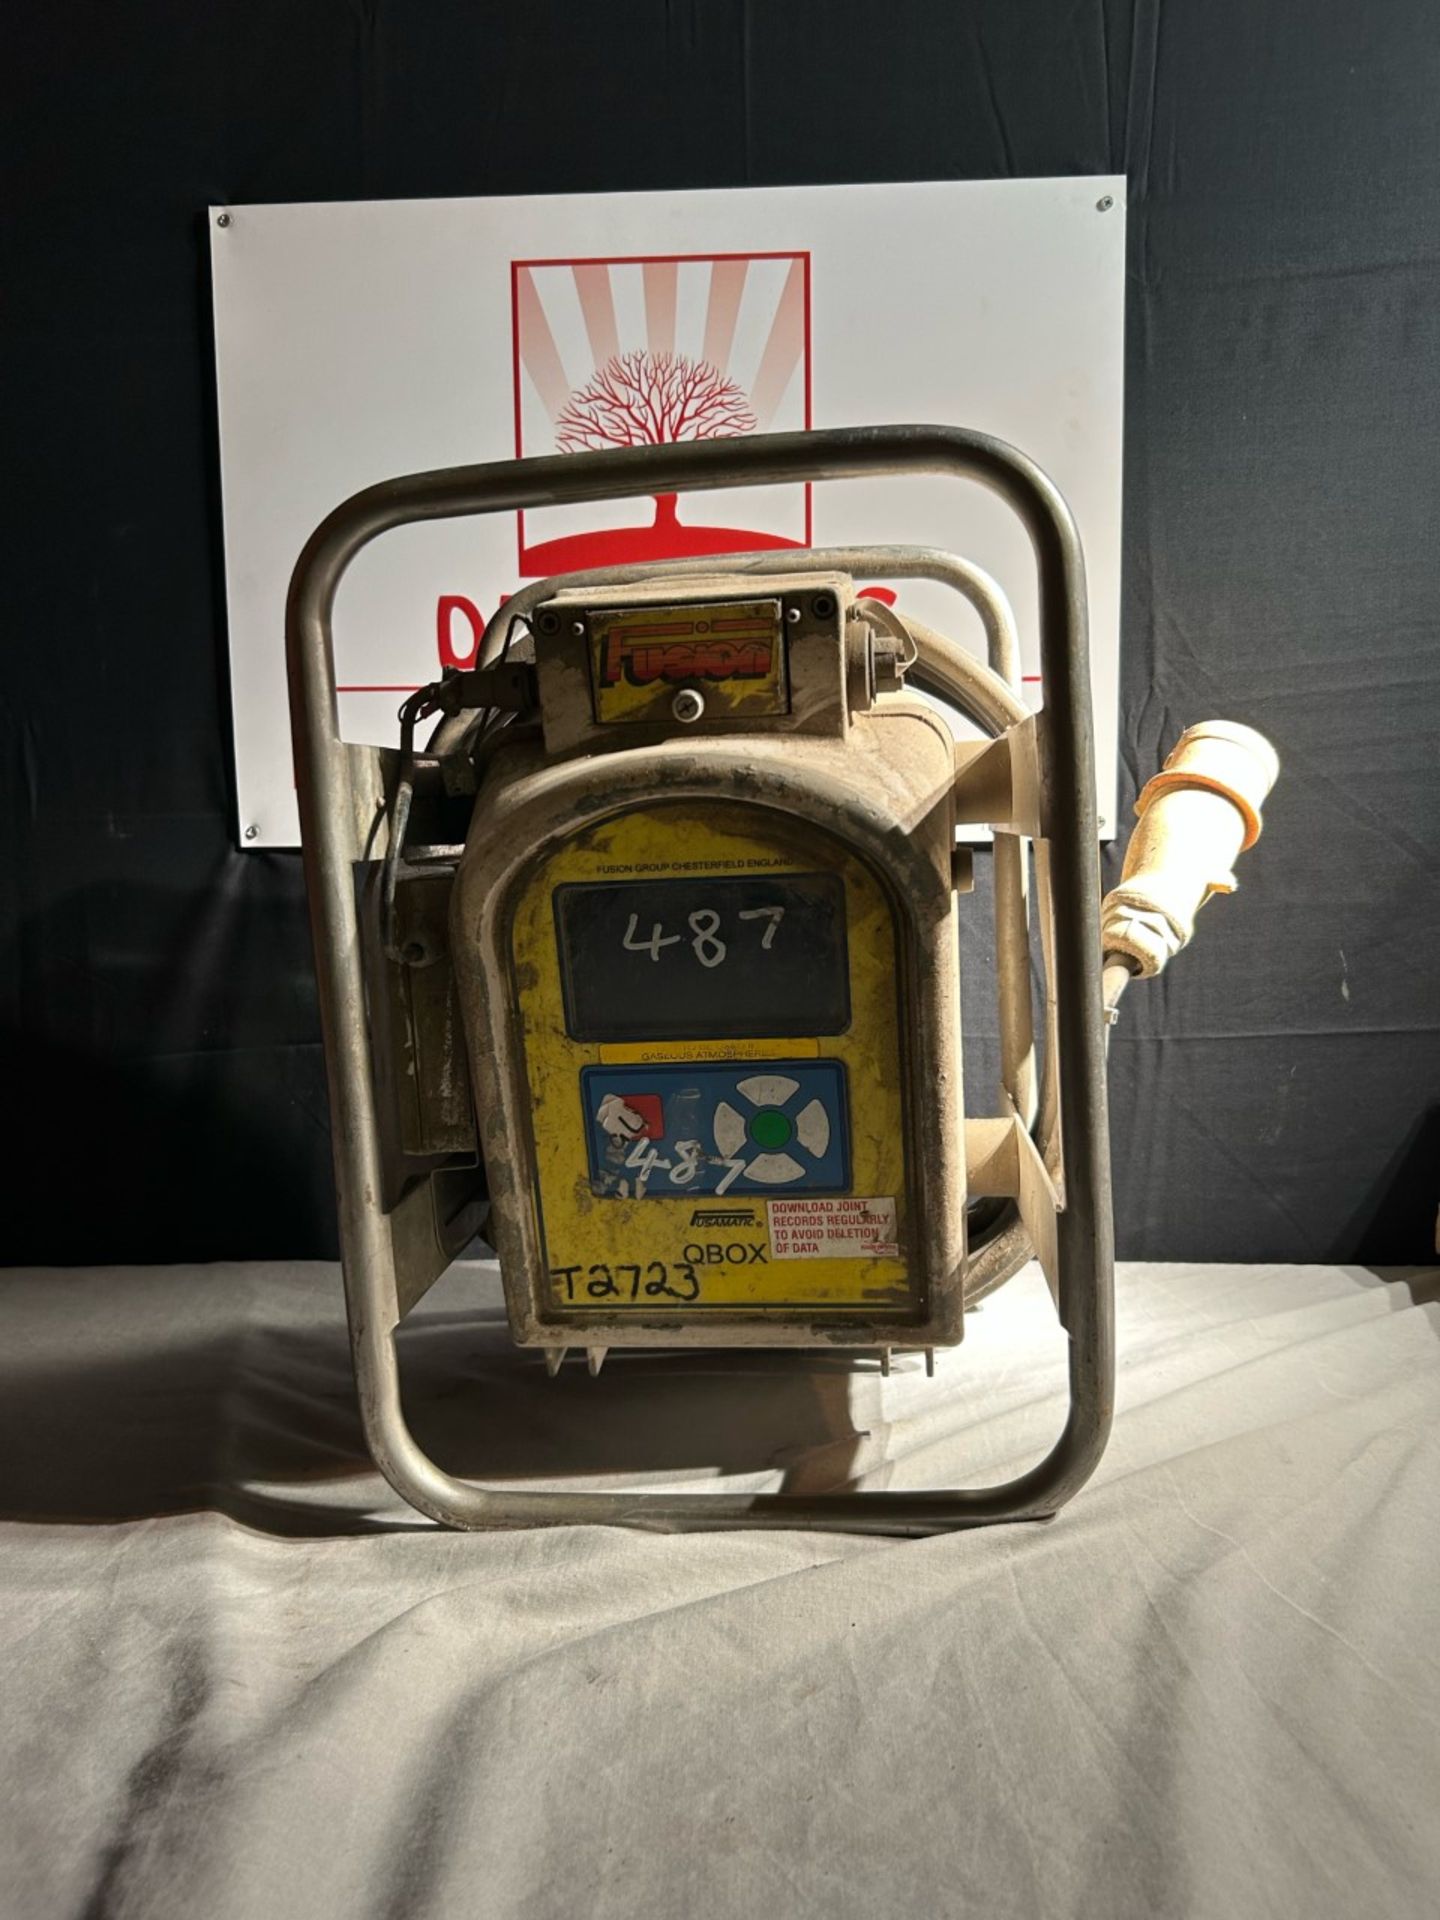 Fusion usamatic qbox electrofusion control unit.